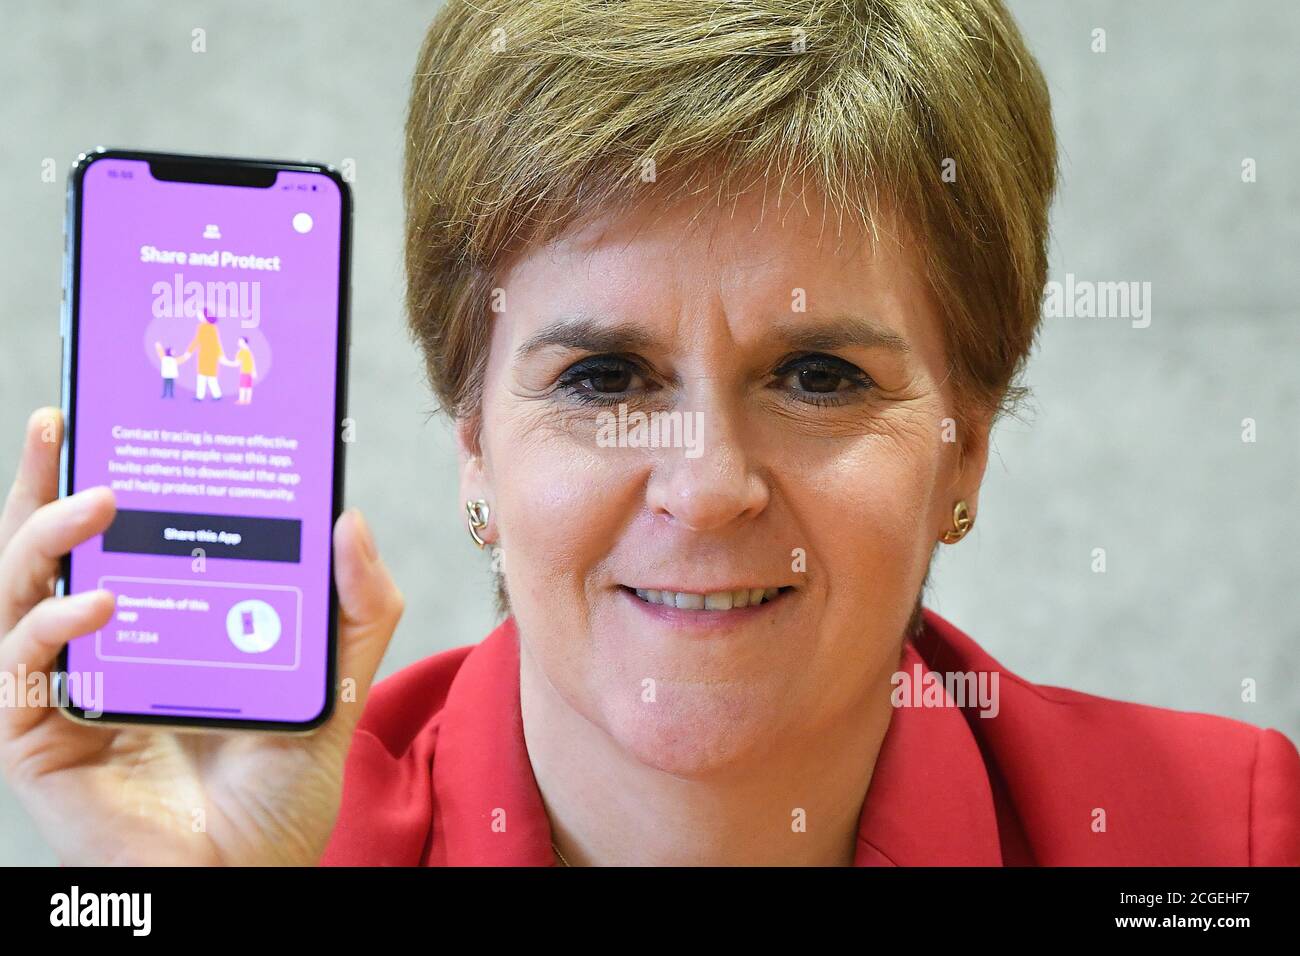 Il primo ministro Nicola Sturgeon vede la nuova app Covid-19 su un telefono al Parlamento scozzese di Edimburgo. Foto Stock